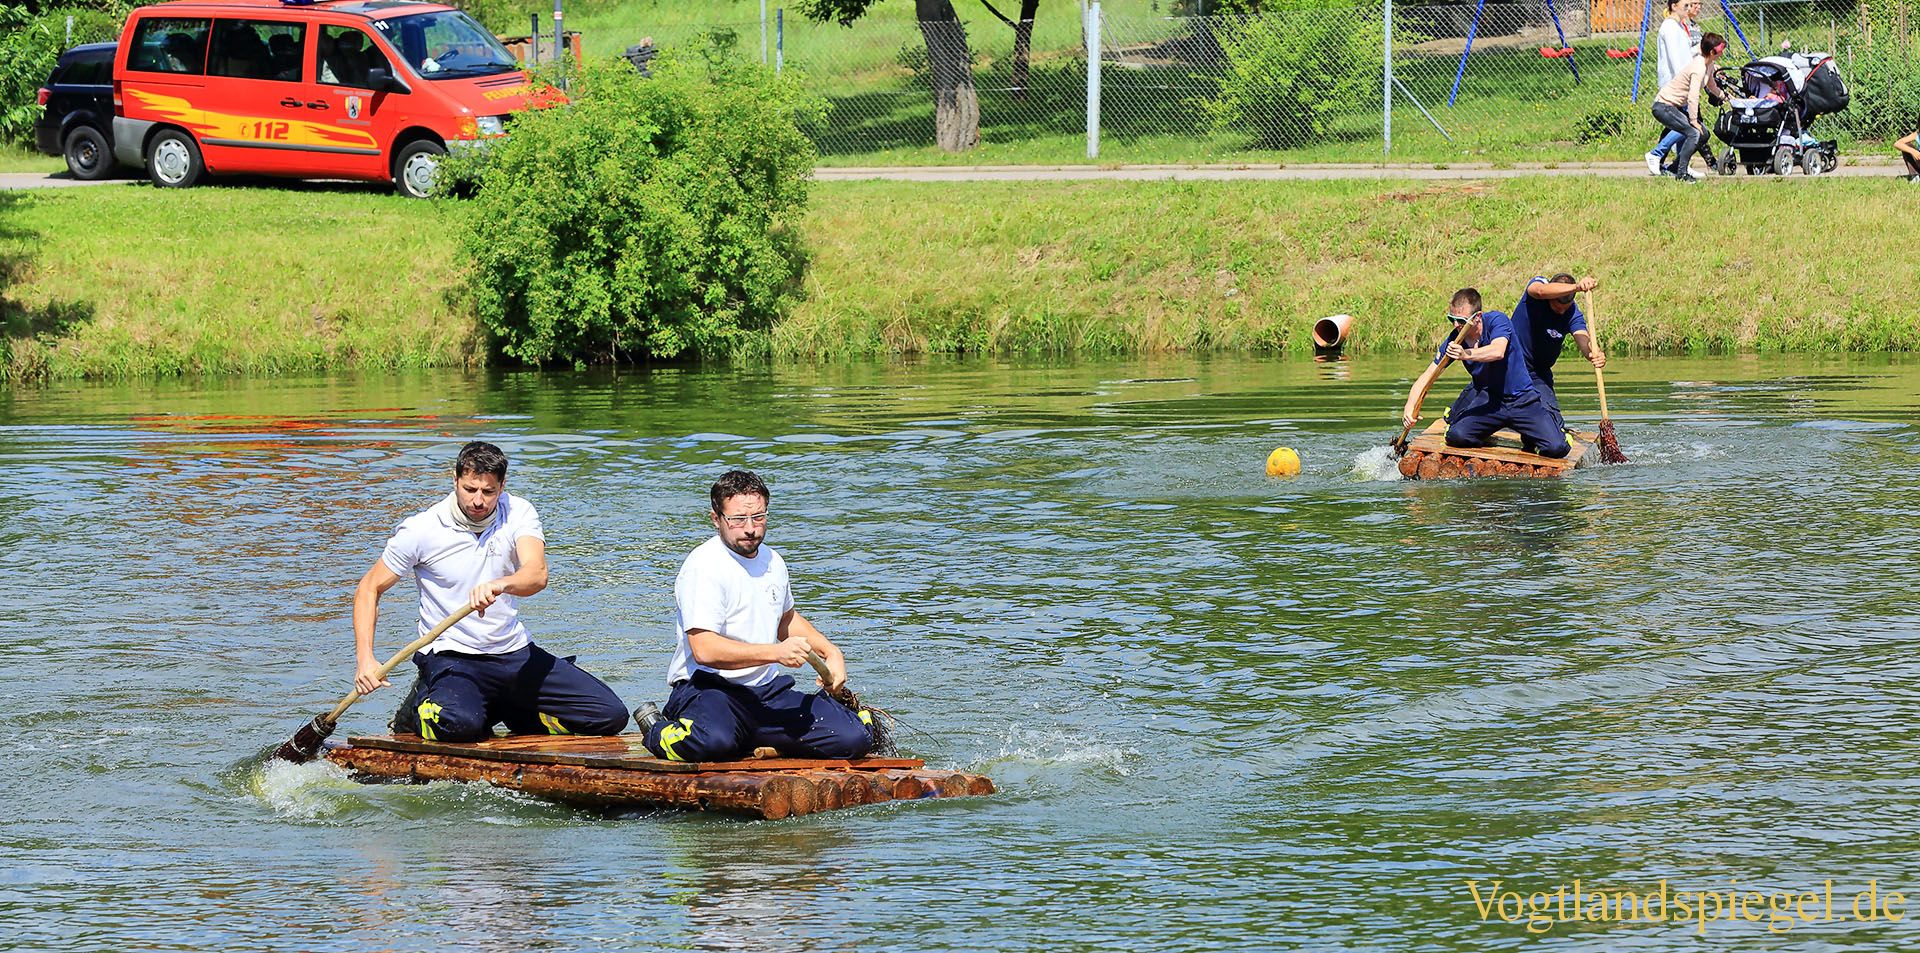 Sommerfest in Zoghaus: 17. Traditionelles Floßrennen